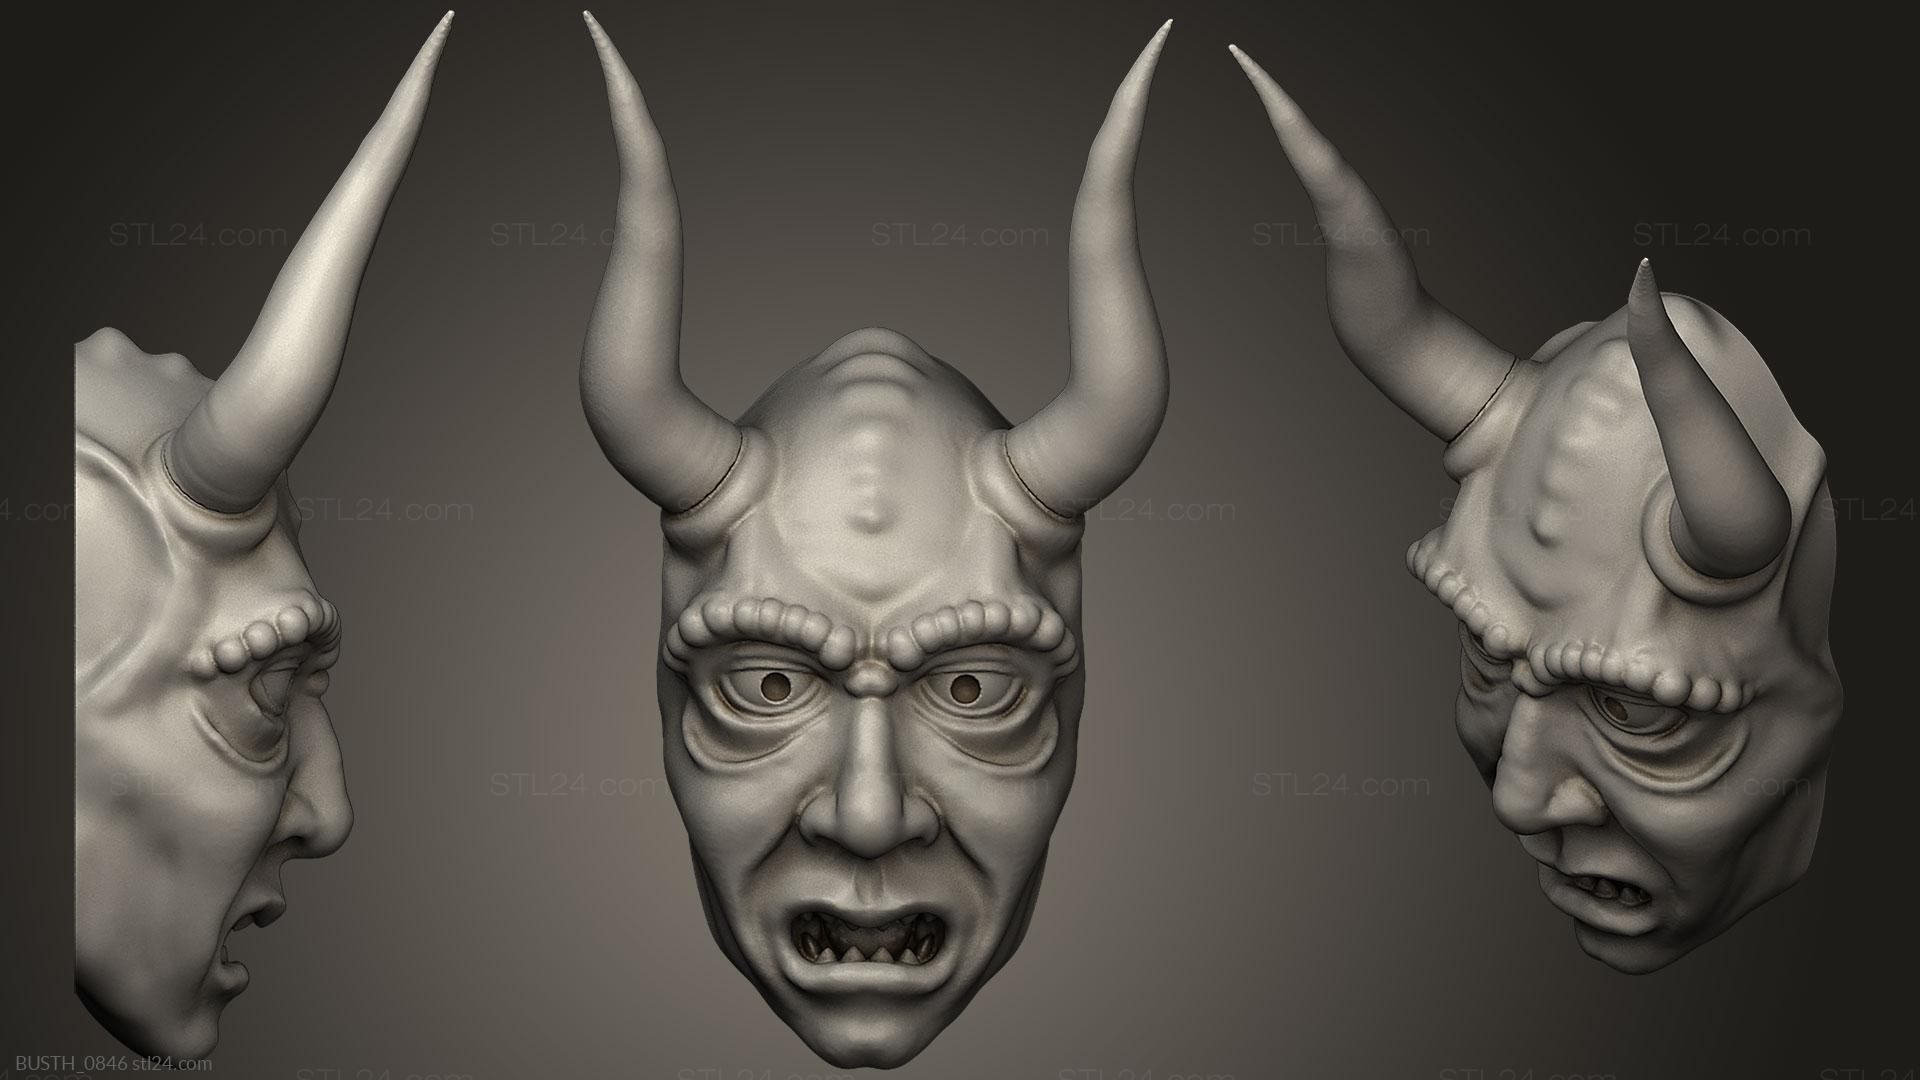 Бюсты монстры и герои (Демон виртуальной реальности, BUSTH_0846) 3D модель для ЧПУ станка